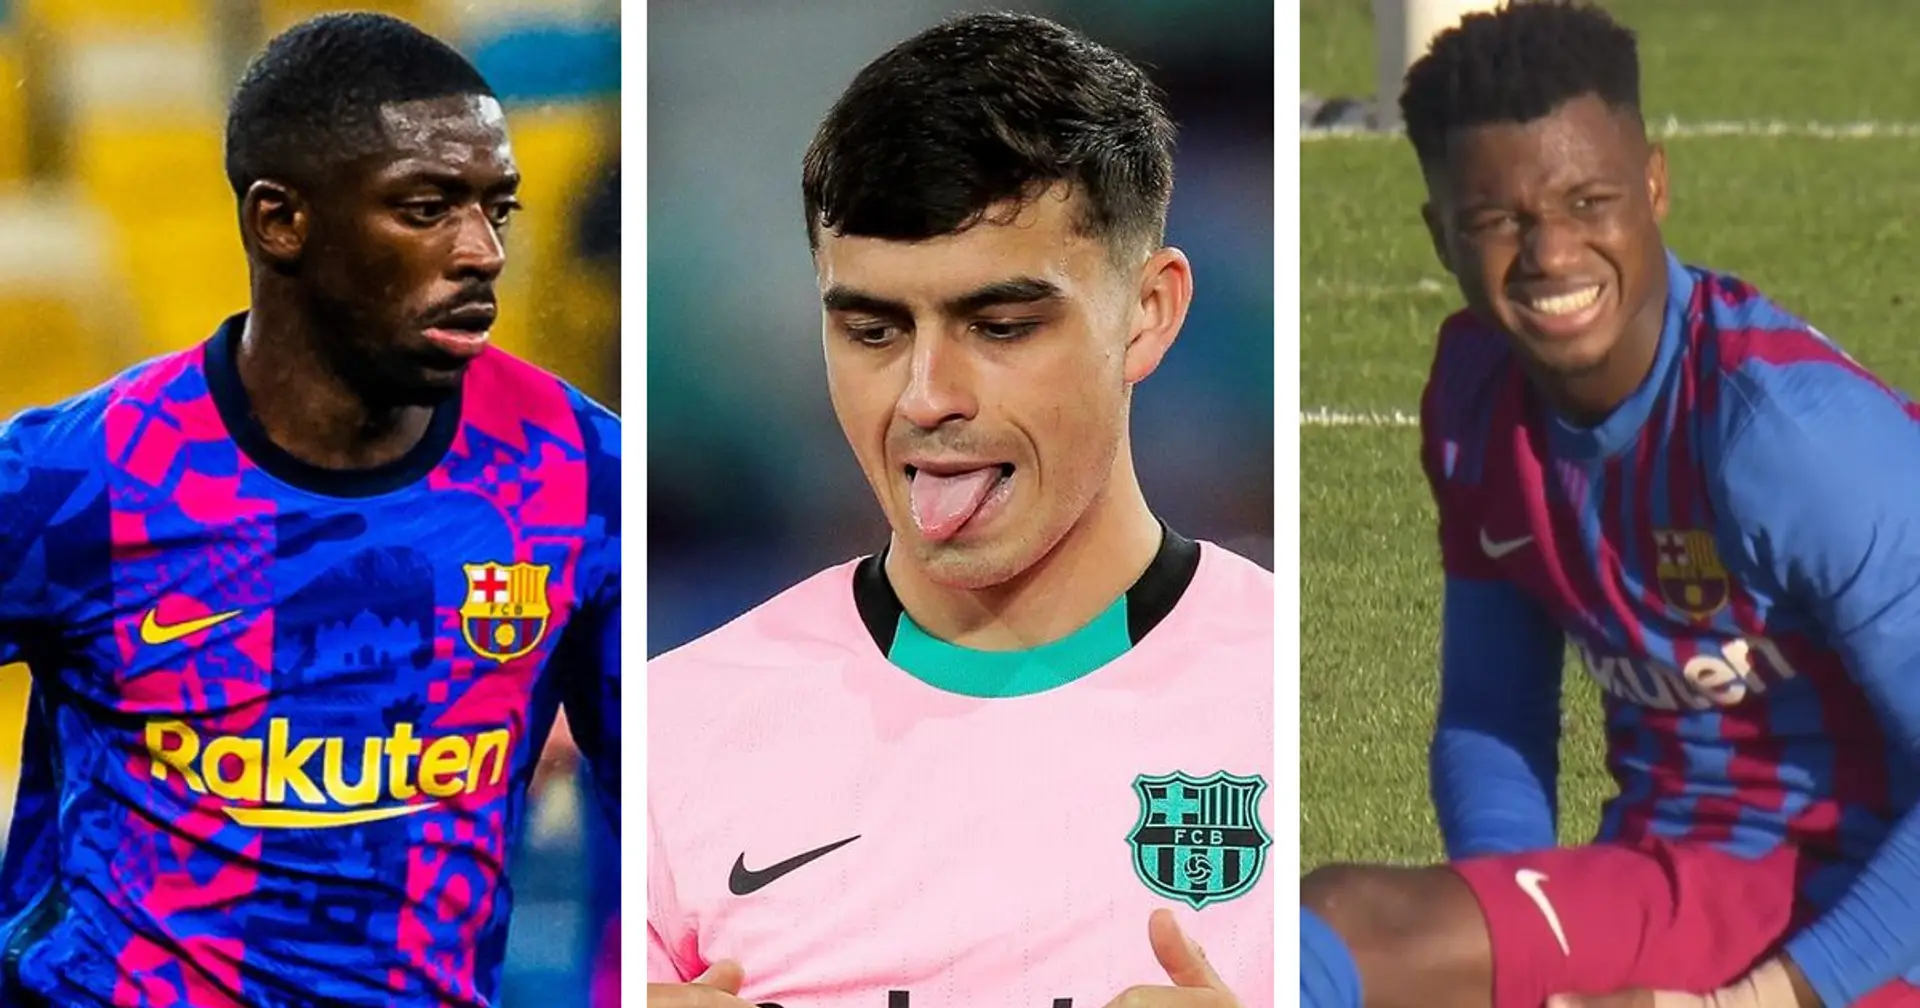 Dernière mise à jour sur les blessures et date de retour de 10 joueurs du Barca